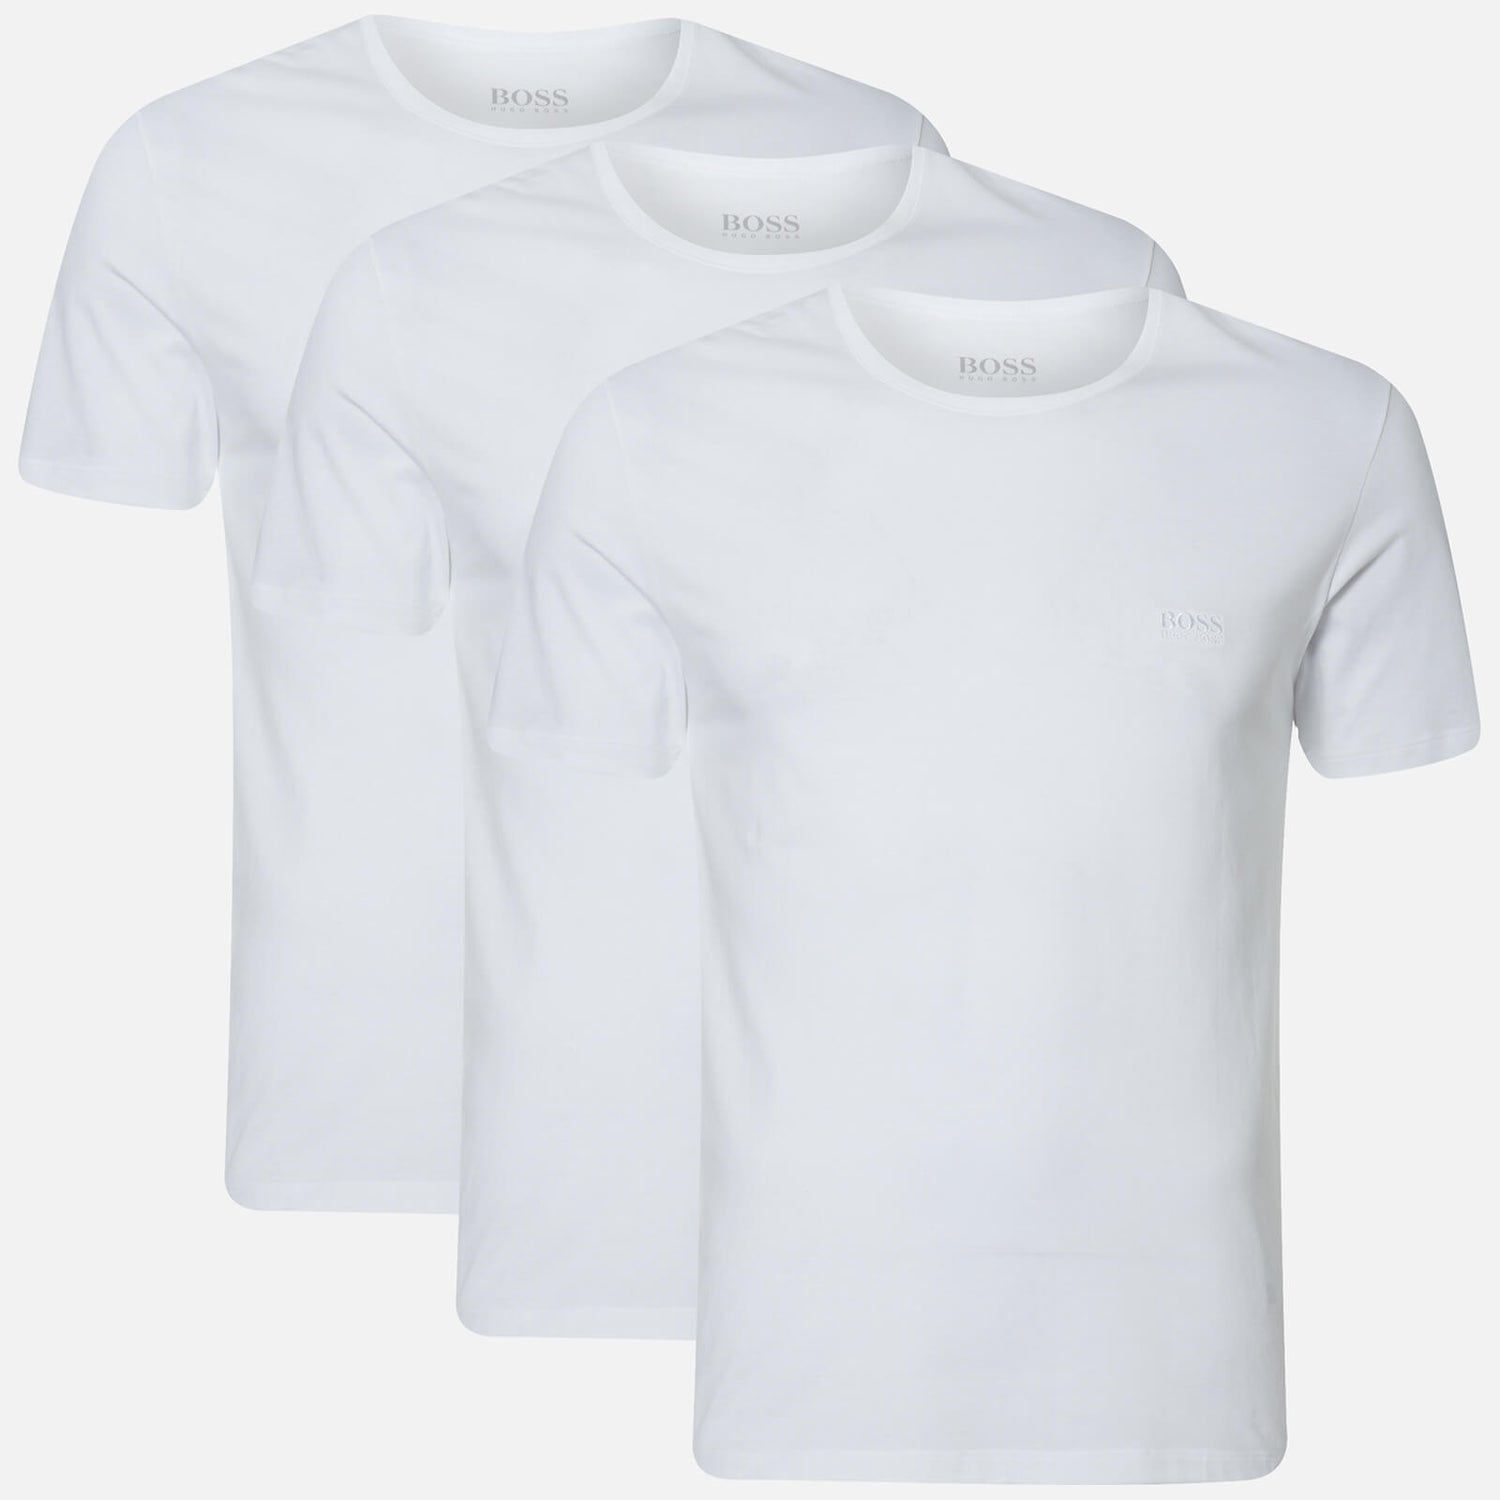 BOSS Men's Three Pack T-Shirts - White